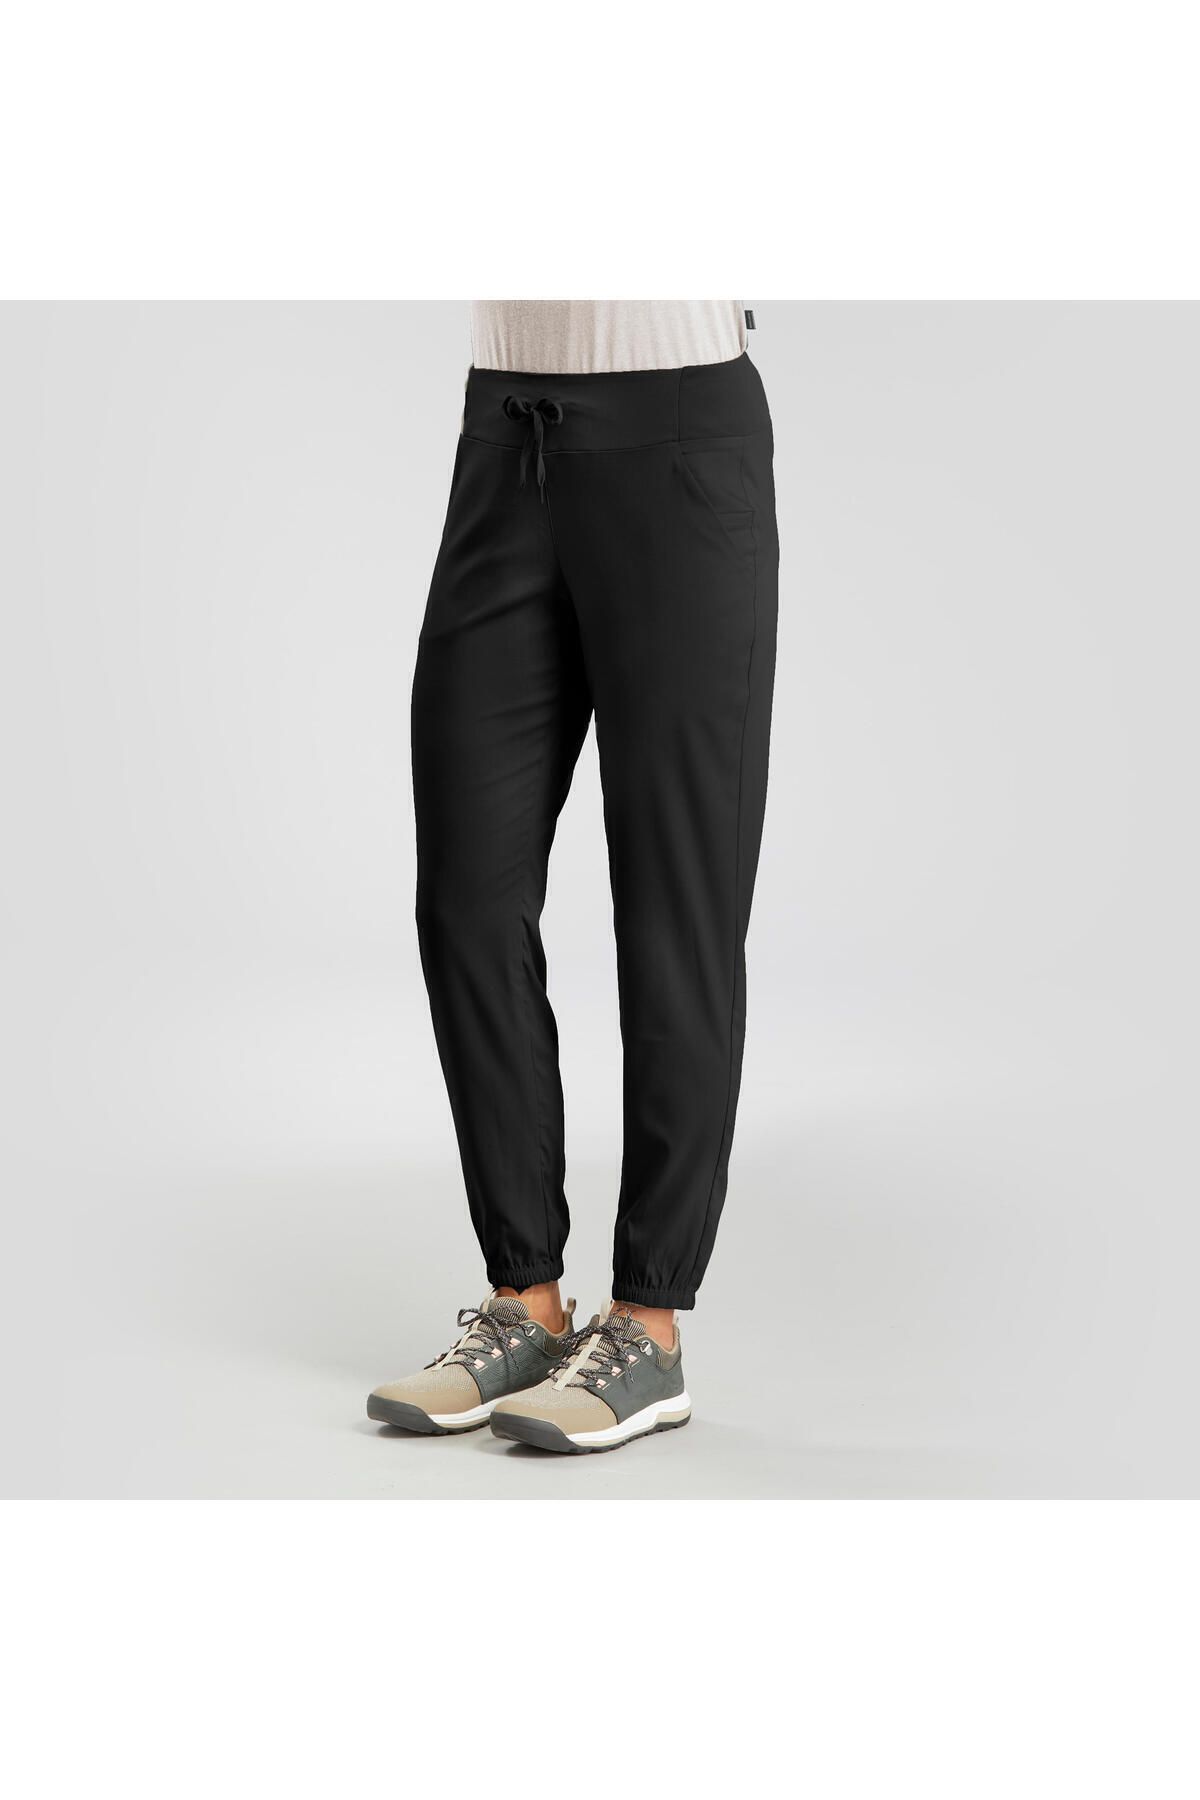 Decathlon Kadın Outdoor Pantolon - Siyah - Nh100